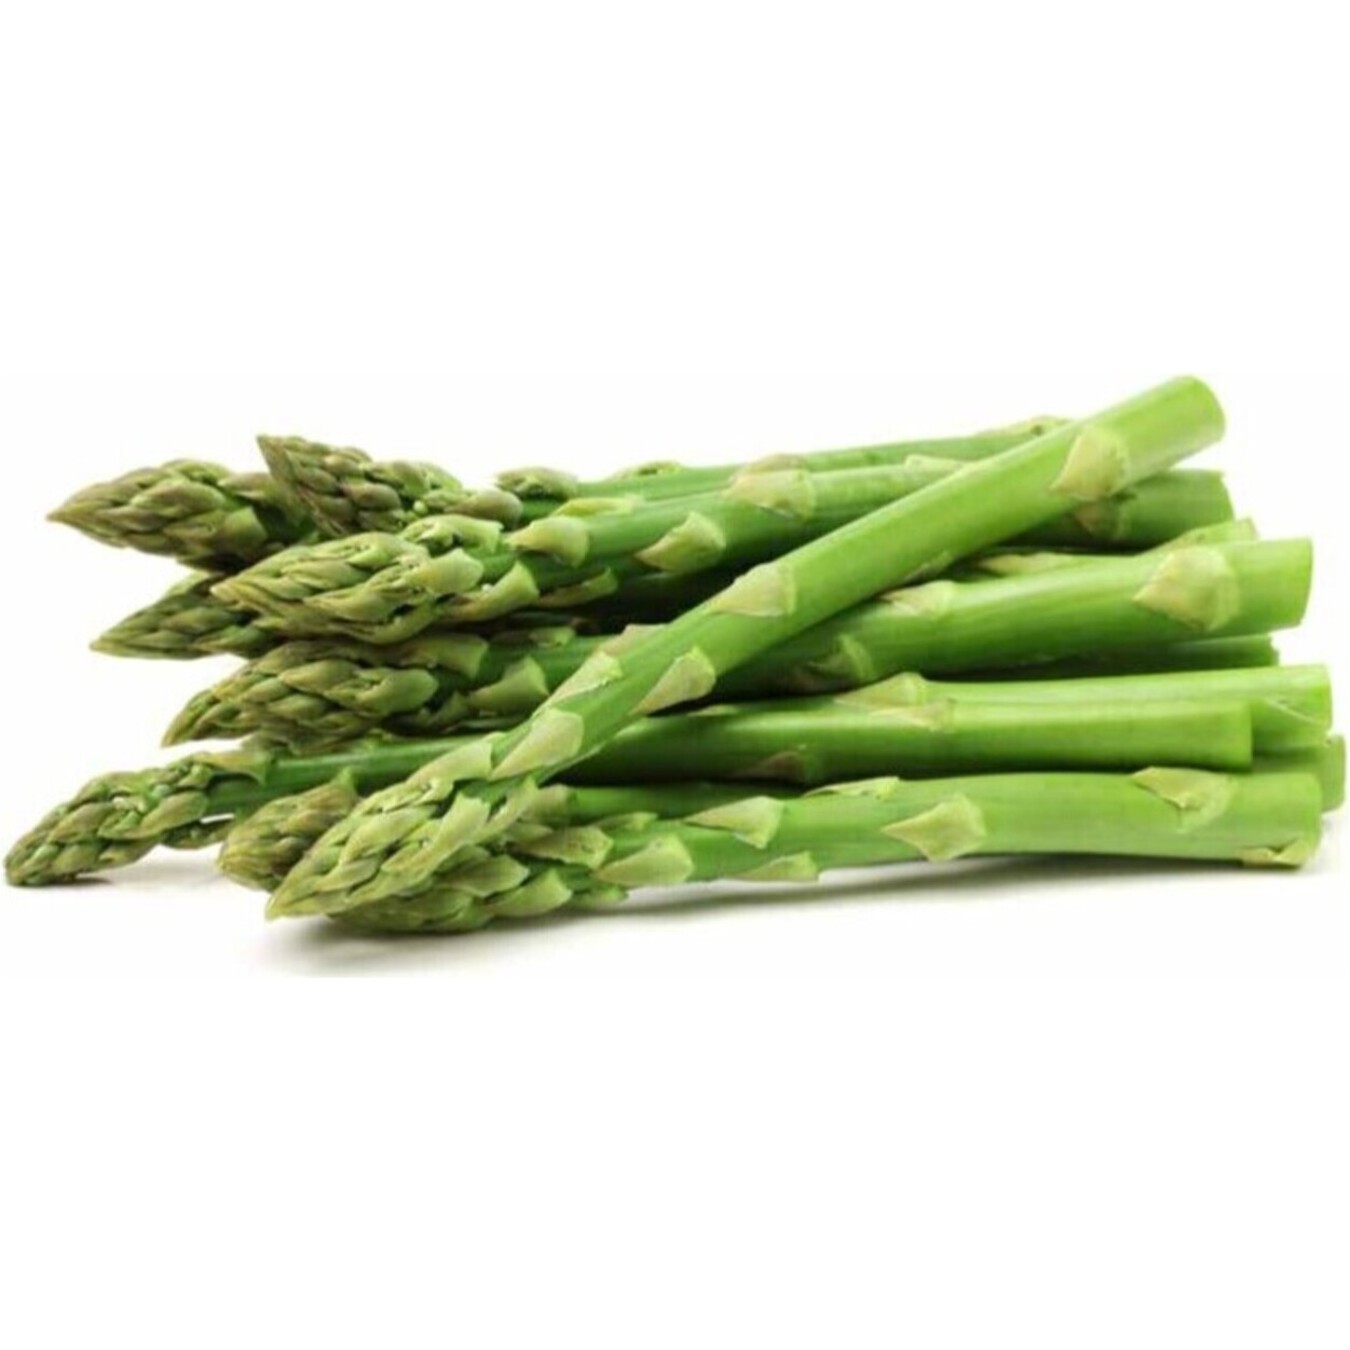 Green Asparagus 450g
pcs